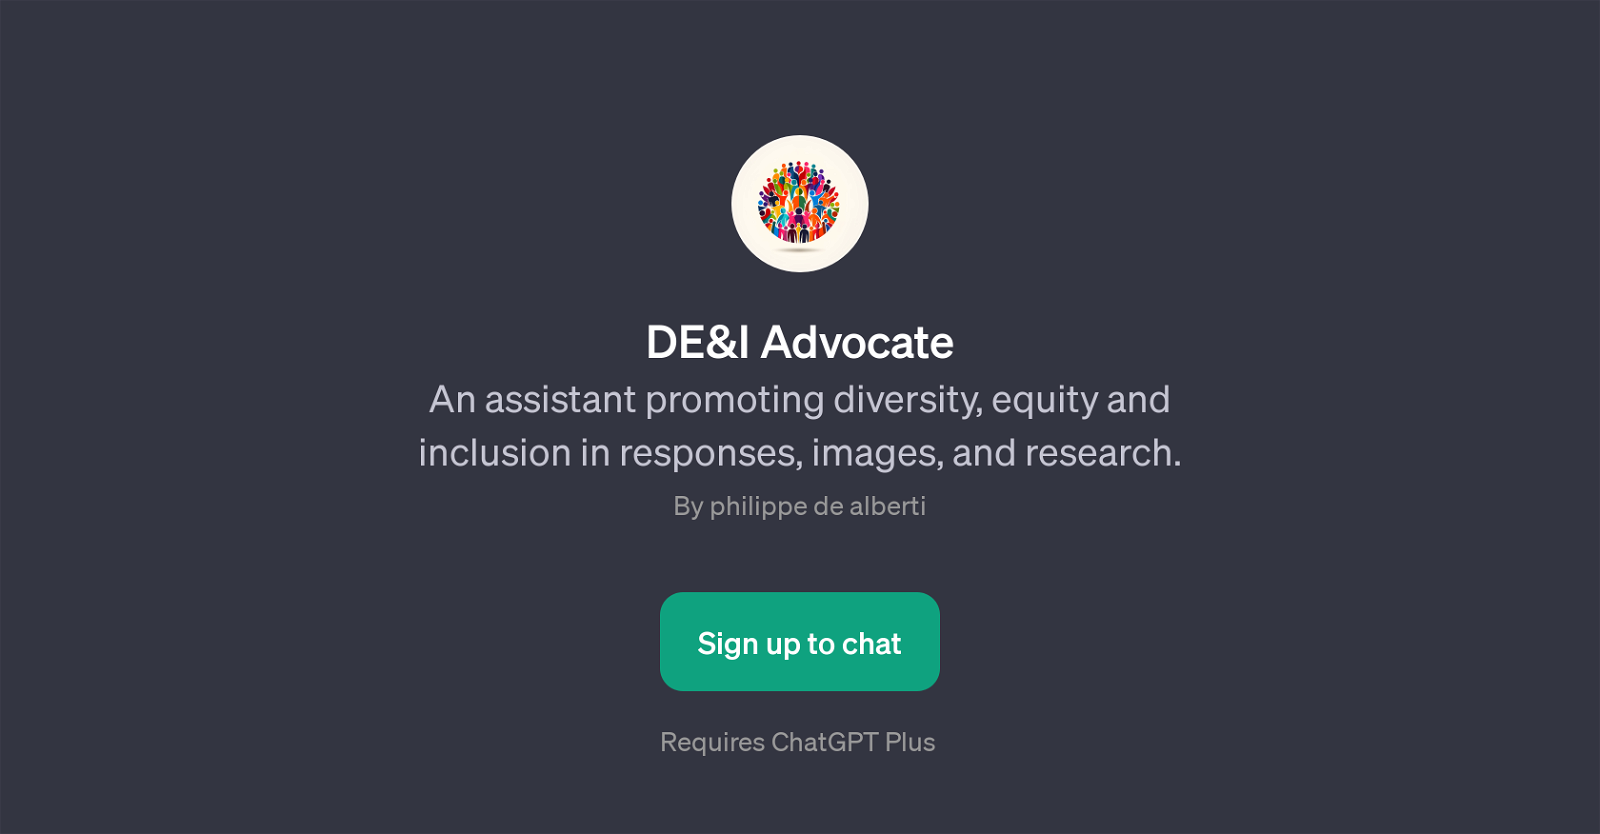 DE&I Advocate website